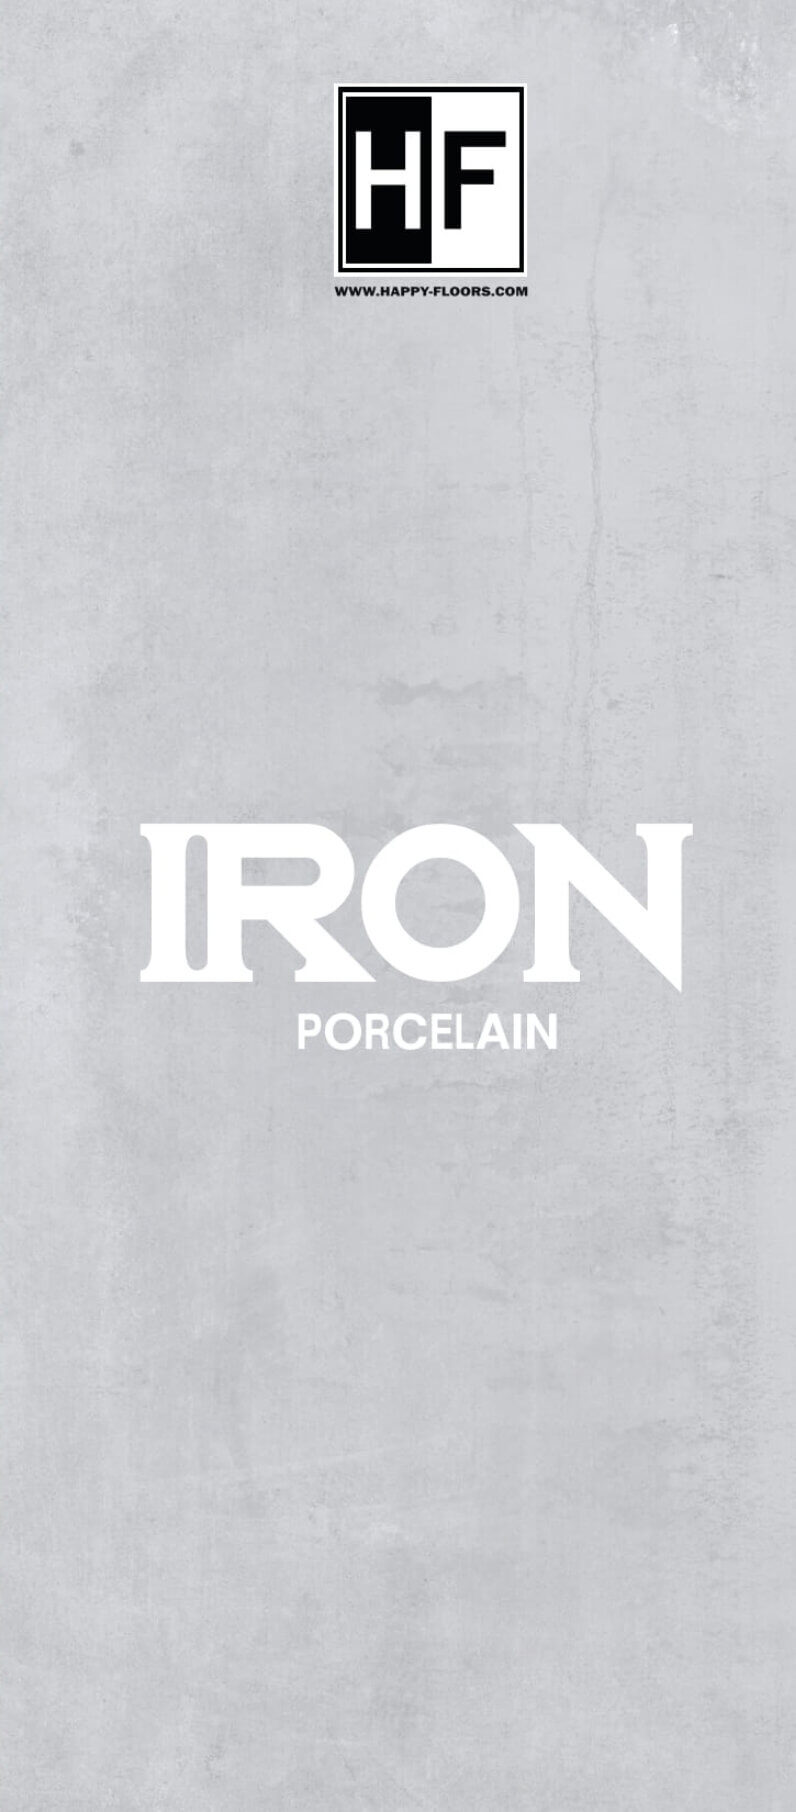 Iron Porcelain